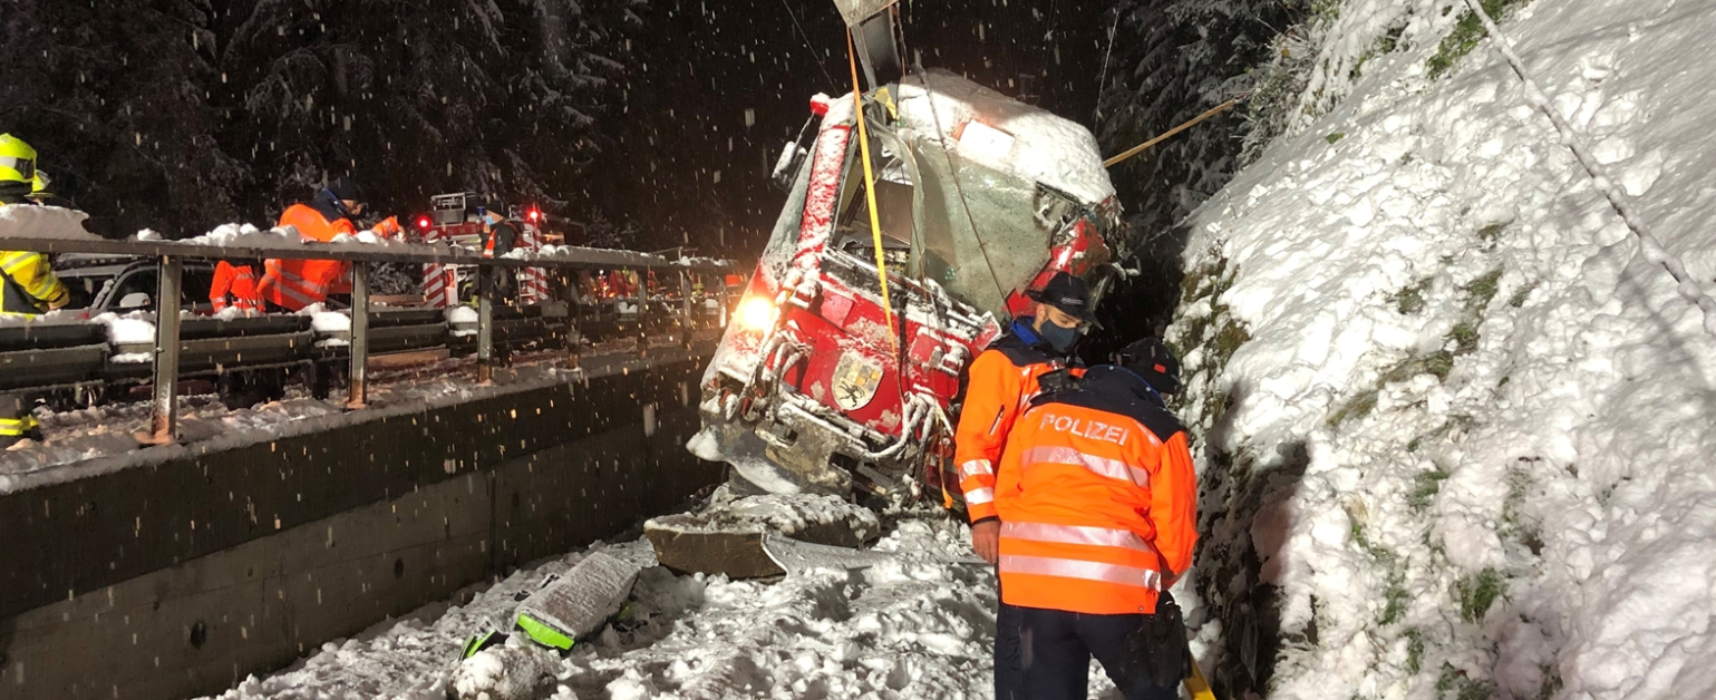 Sils im Domleschg: Zug entgleist + Lokführerin mittelschwer verletzt